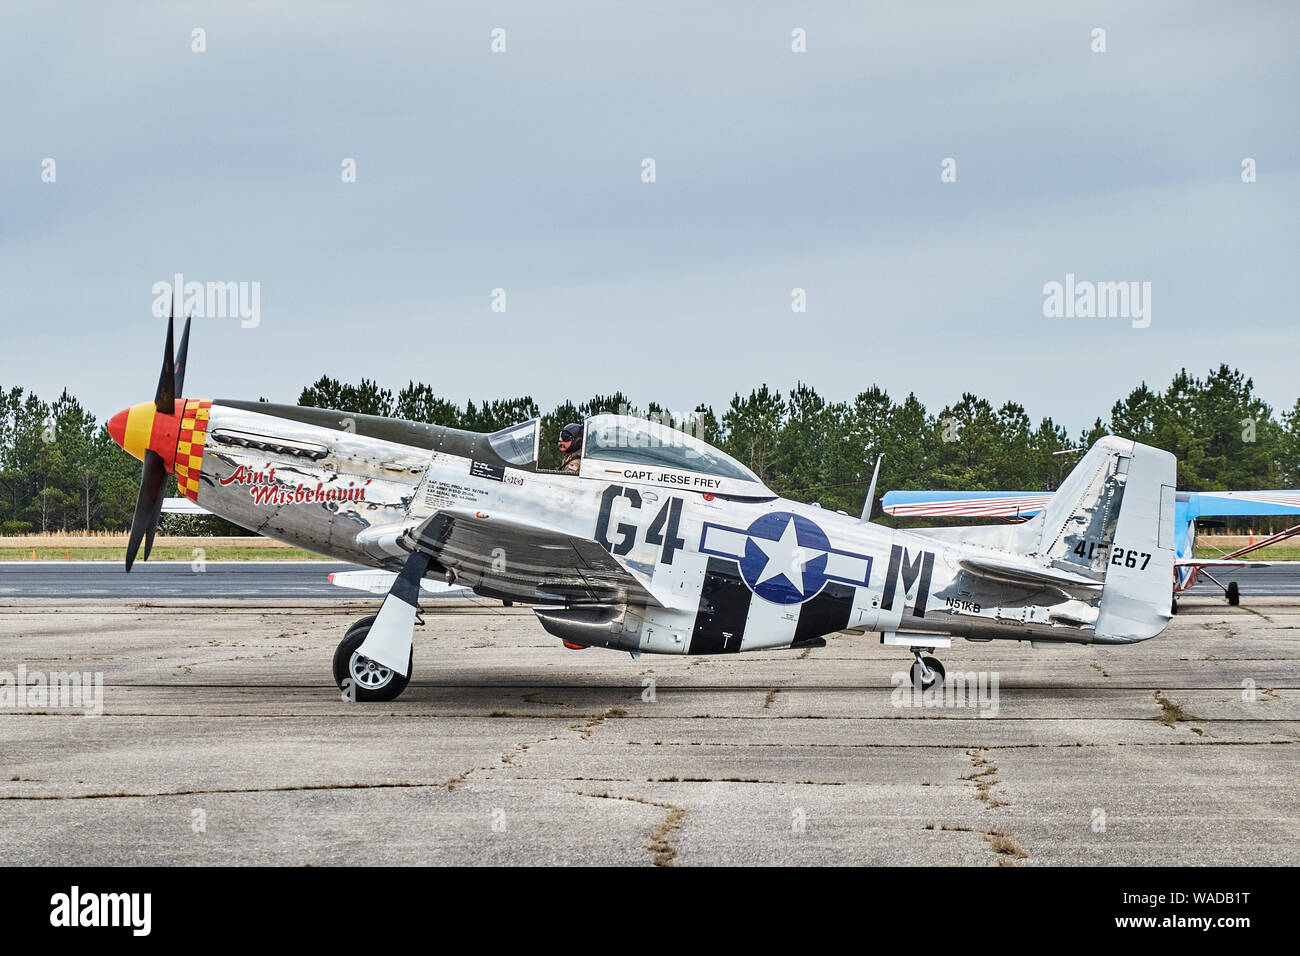 Geparkt vintage American P51 Mustang fighter Flugzeug, die Ai nicht Misbehaven, AUS DEM ZWEITEN WELTKRIEG Ära in Bessemer Alabama, USA. Stockfoto